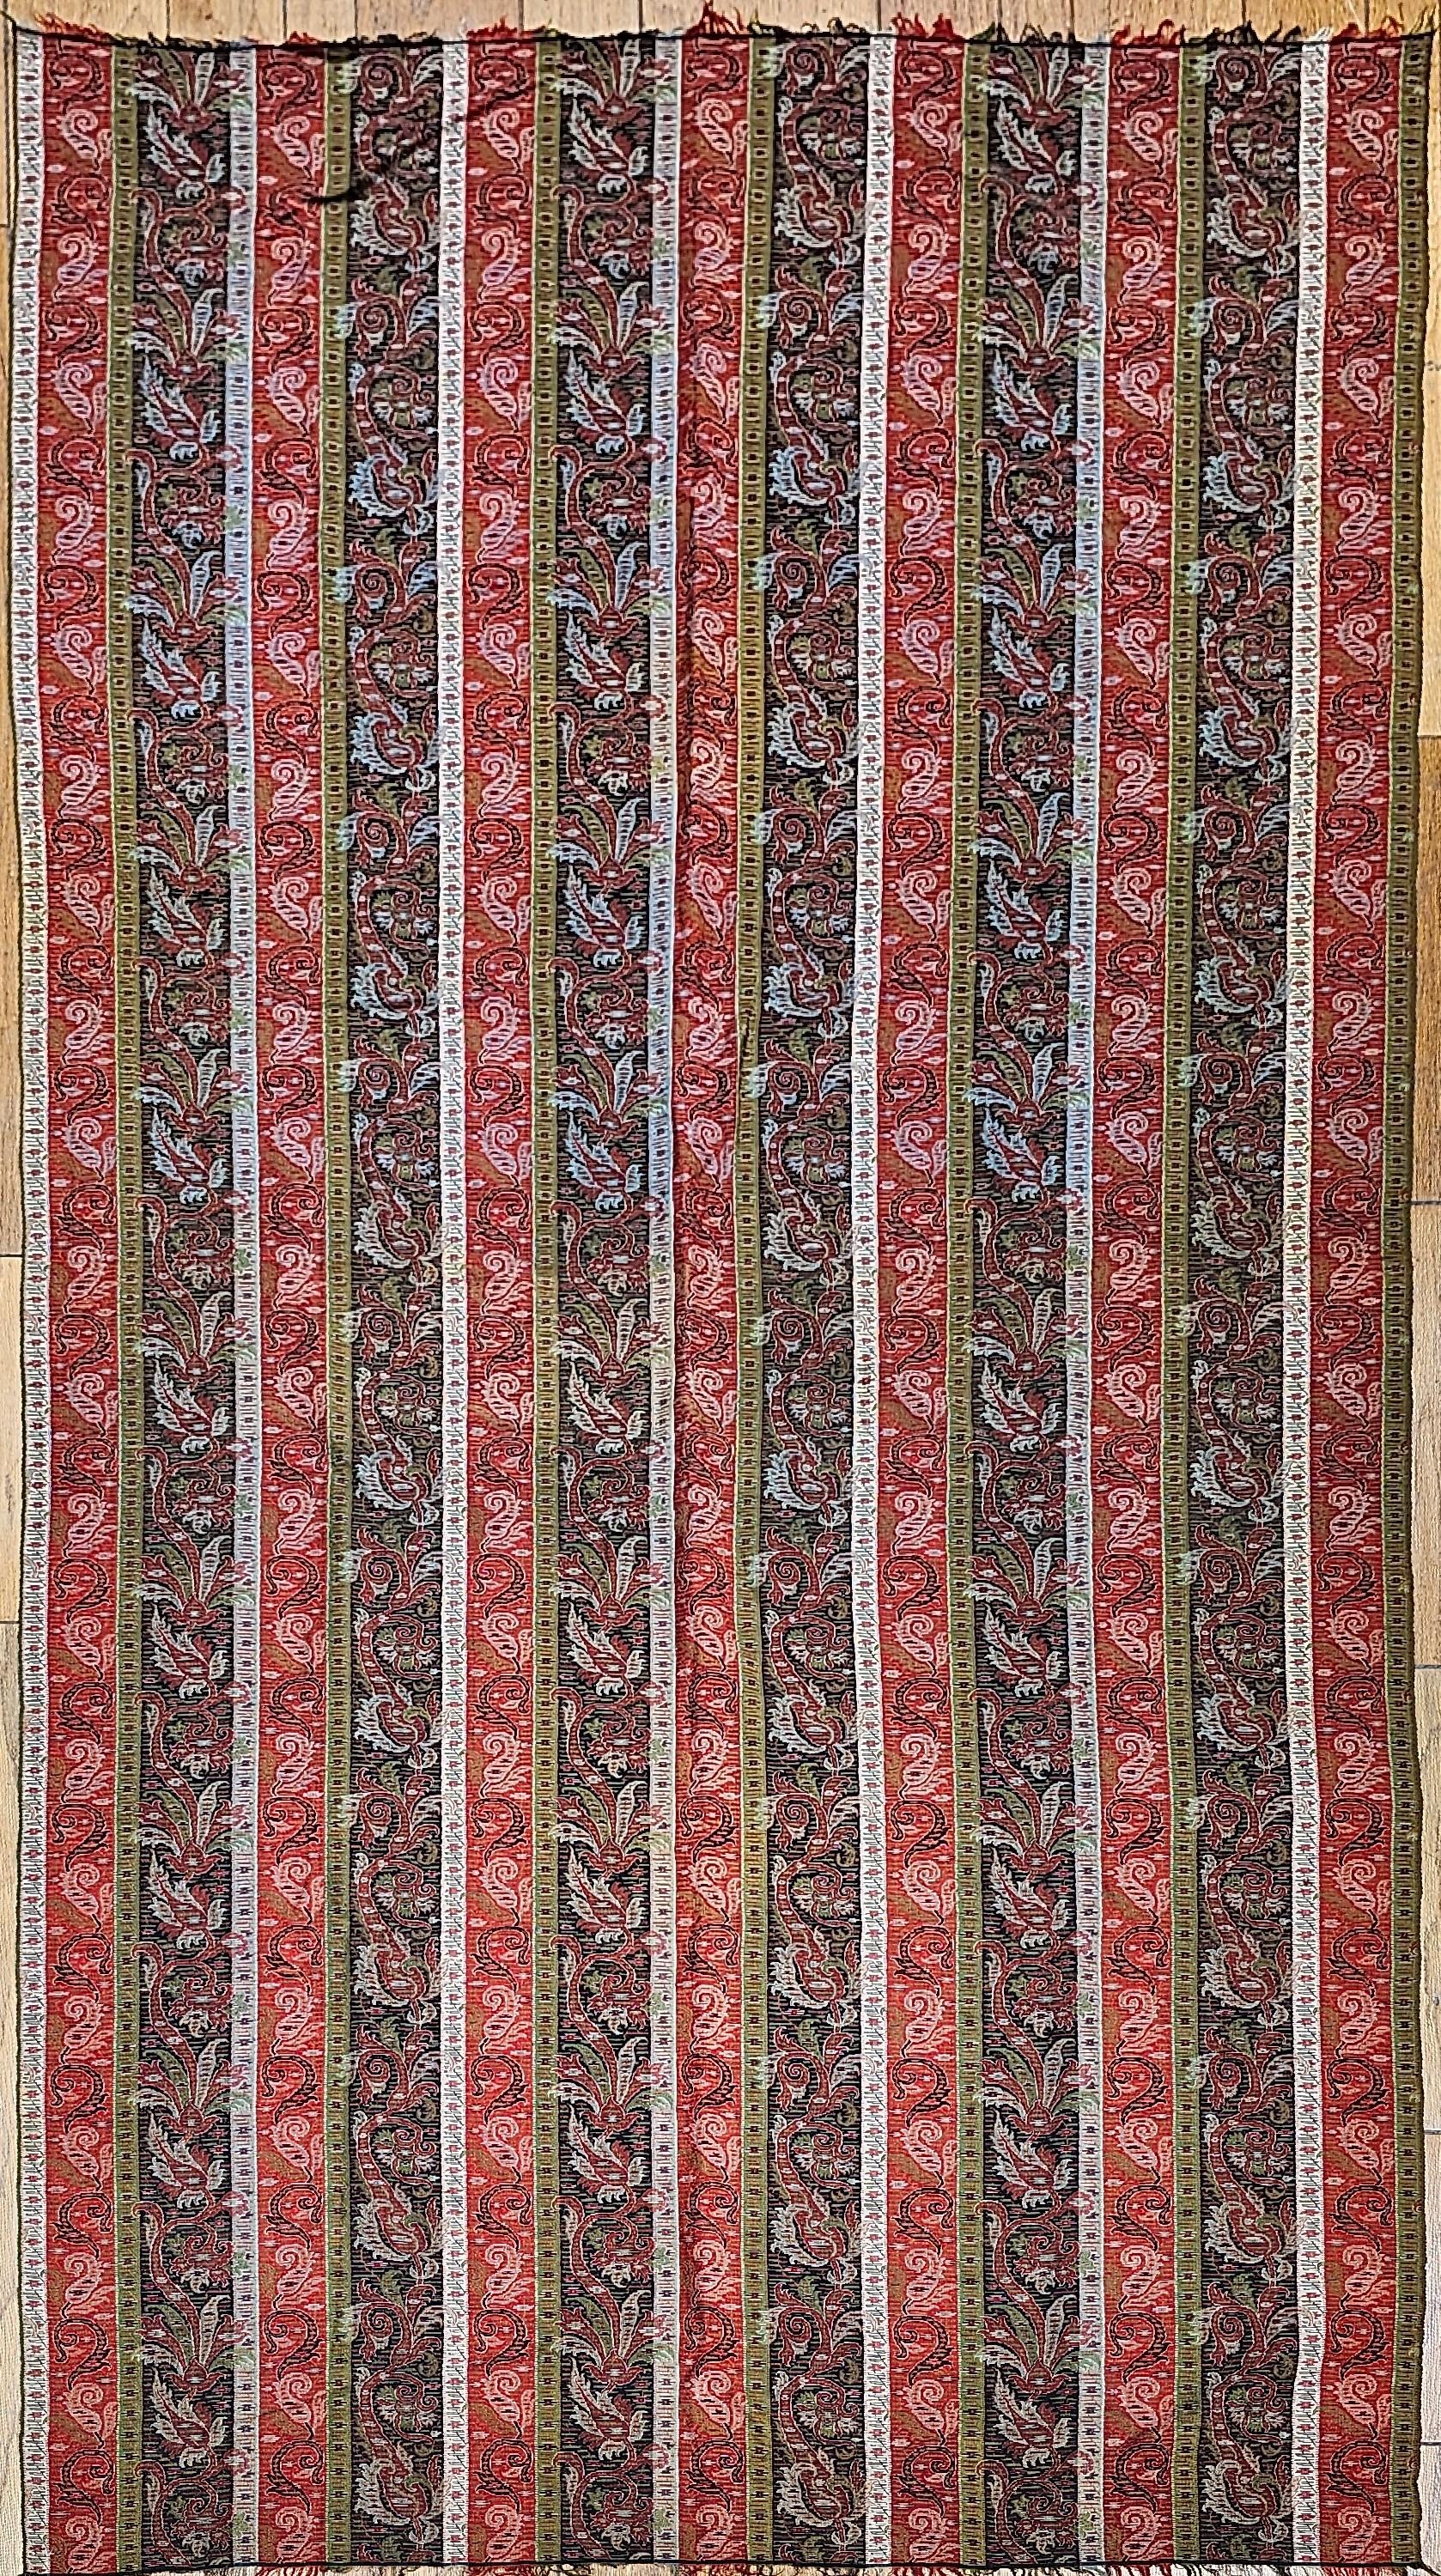 Handgewebter Kaschmiri-Paisley-Schal aus NW-Indien aus dem 19. Jahrhundert in den Farben Ziegelrot, Elfenbein, Schwarz und Grün.  Der Schal hat ein Paisleymuster als Rand mit einer größeren Paisleyform an jedem Ende, wobei der mittlere Teil des